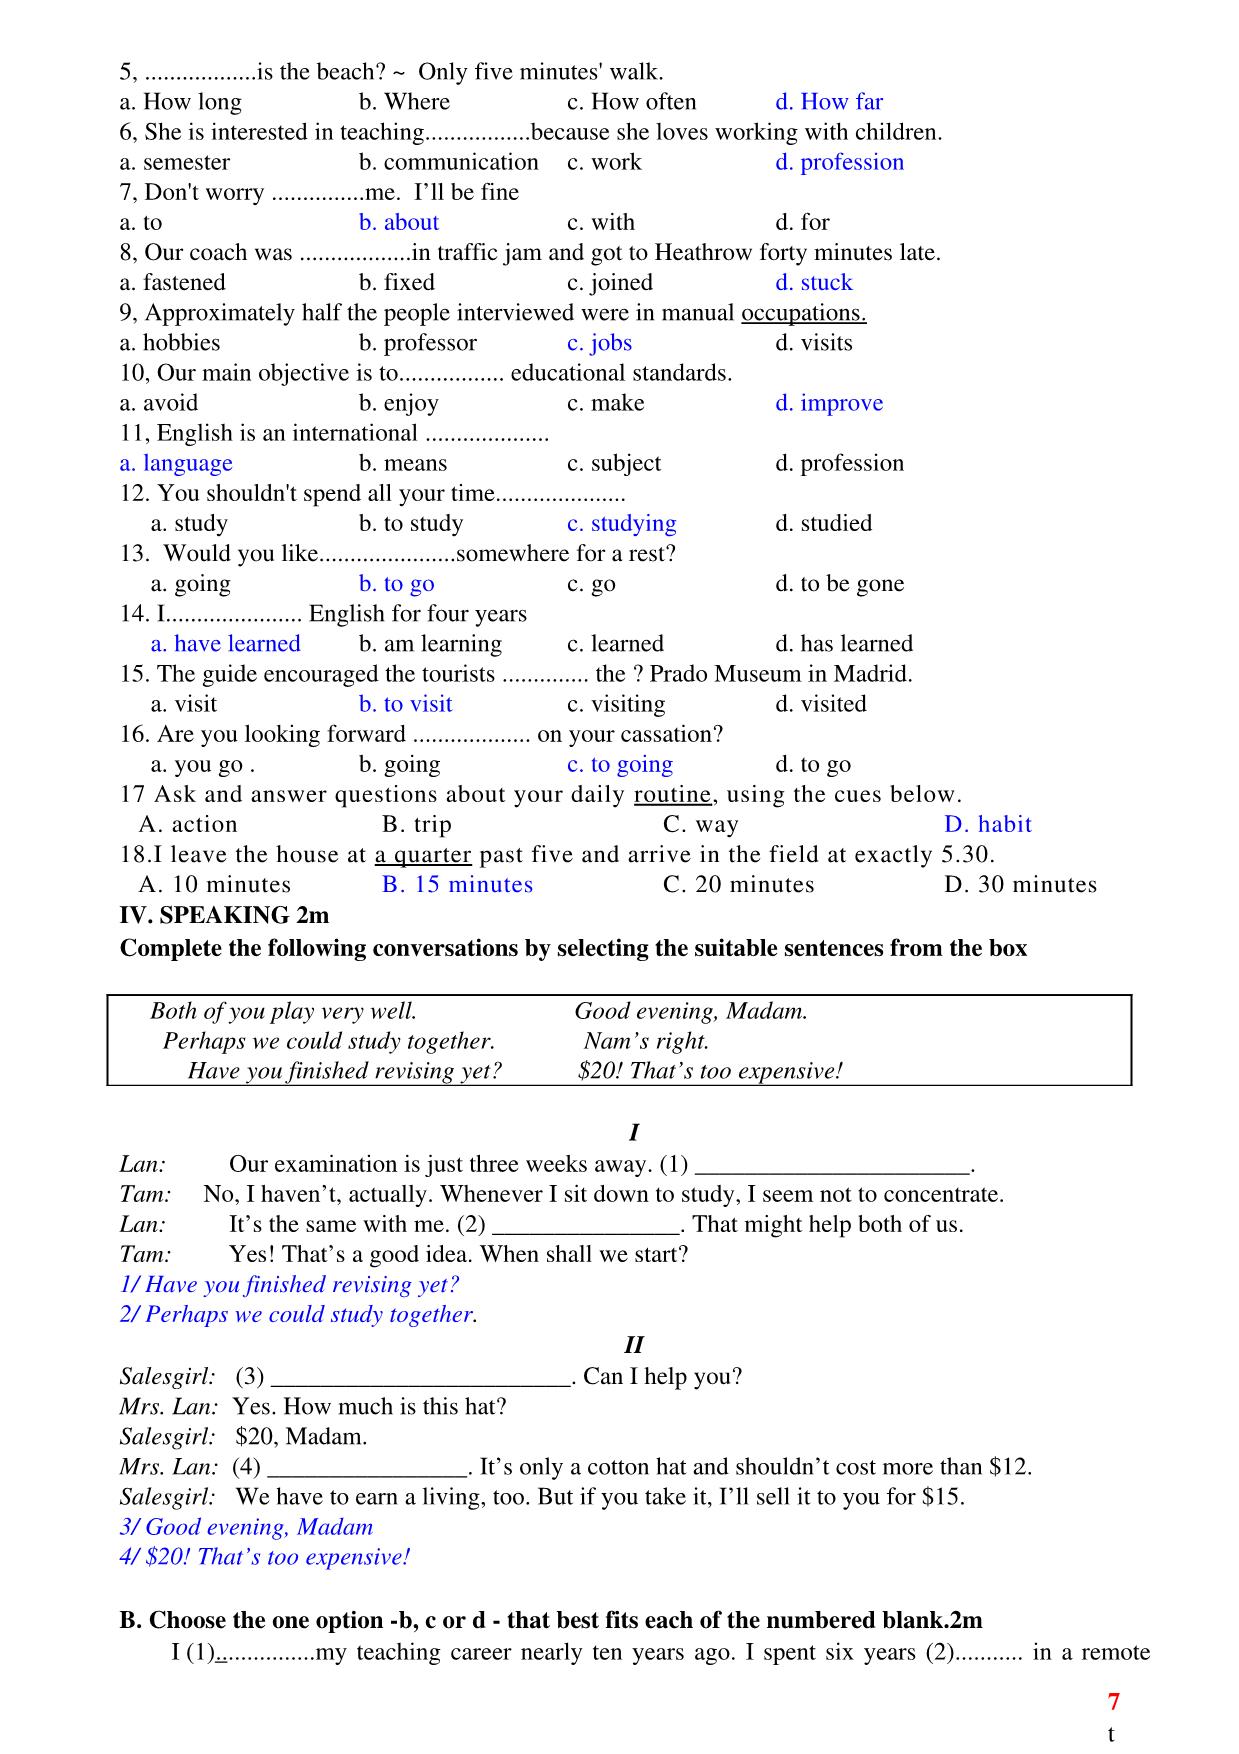 Ôn tập kiểm tra 1 tiết lần 1 môn tiếng Anh Lớp 10 - Học kì 1 trang 7